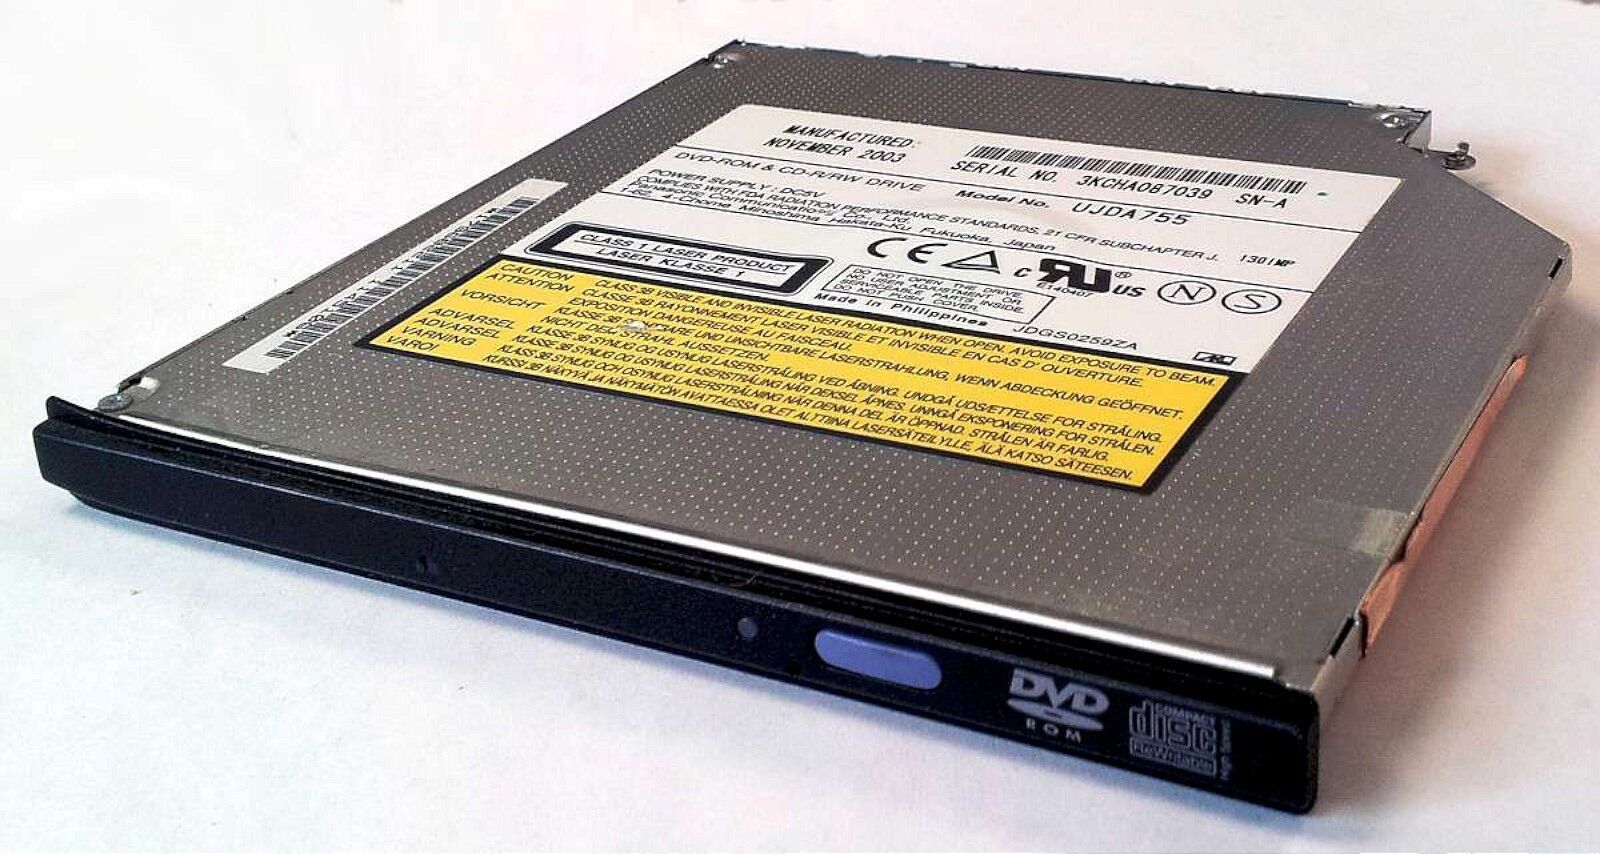 Sony Vaio PCG-V505 Laptop CDRW/DVD Drive UJDA755 V505BC V505BL V505DC V505DX - $9.36